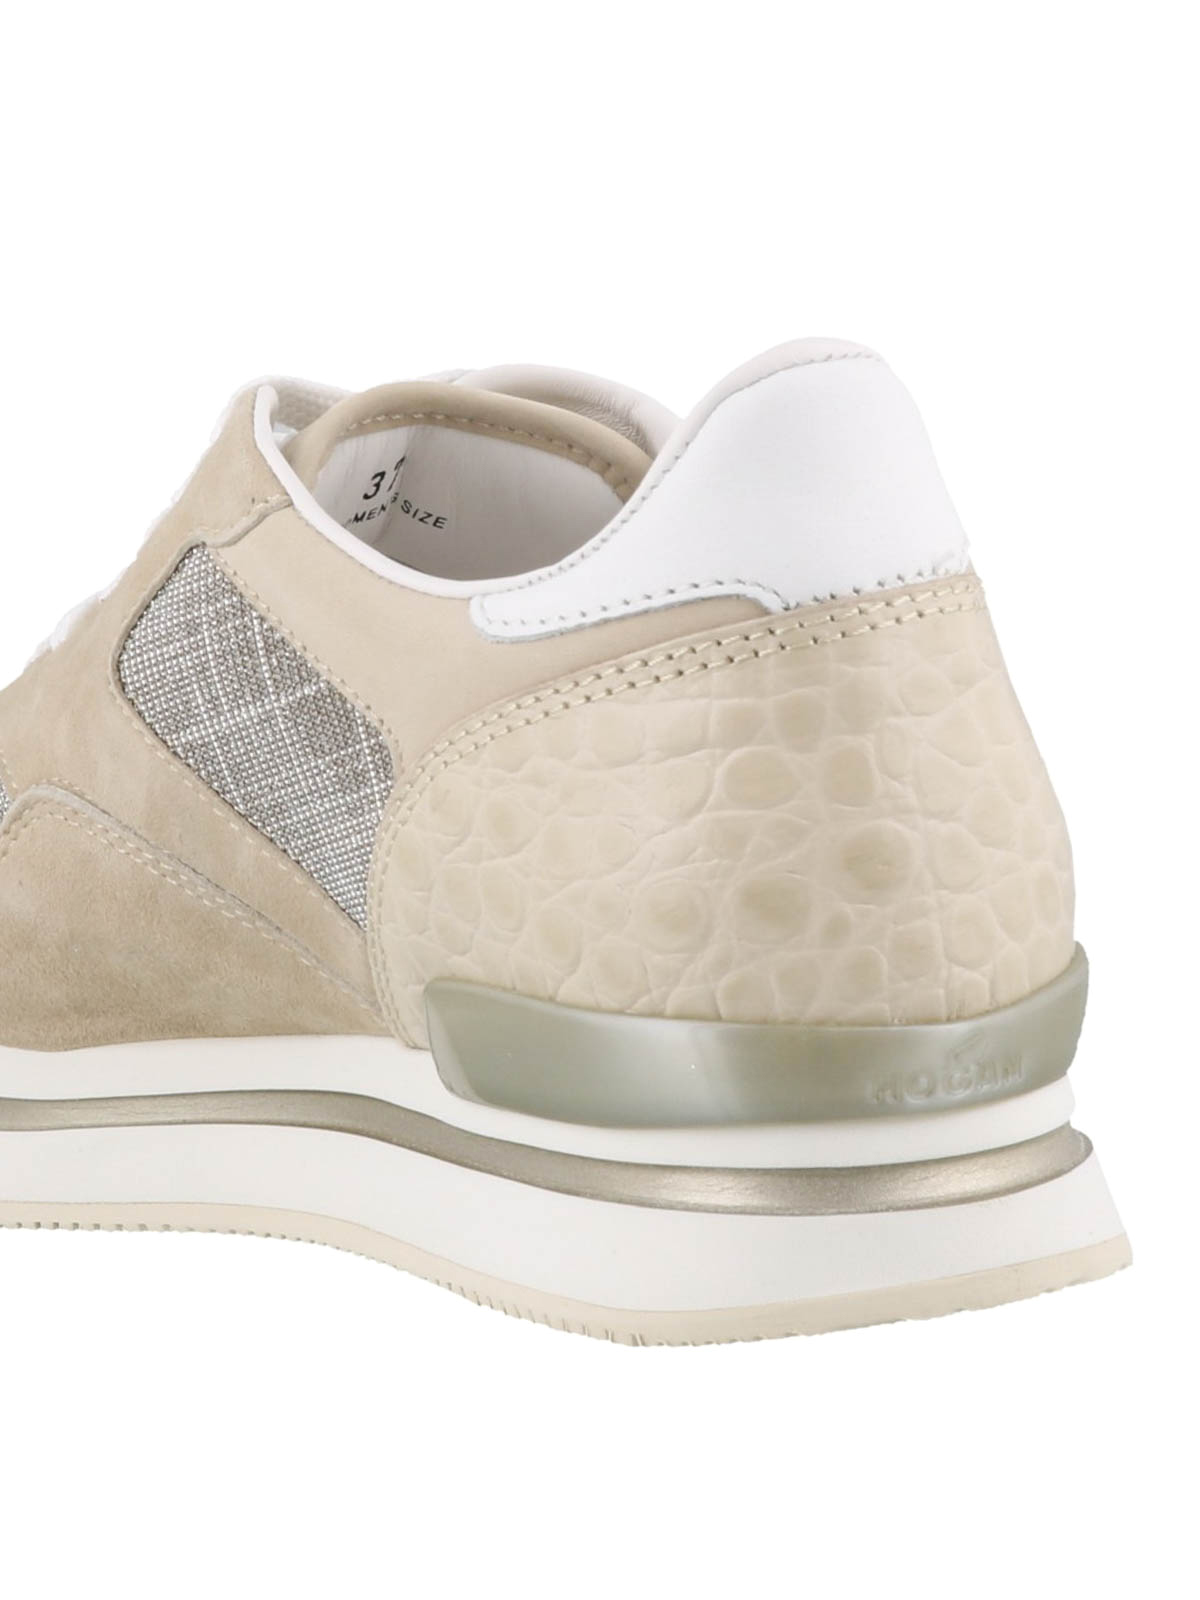 HOGAN damen schuhe women shoes H222 beige suede sneaker with mesh fabric panel 